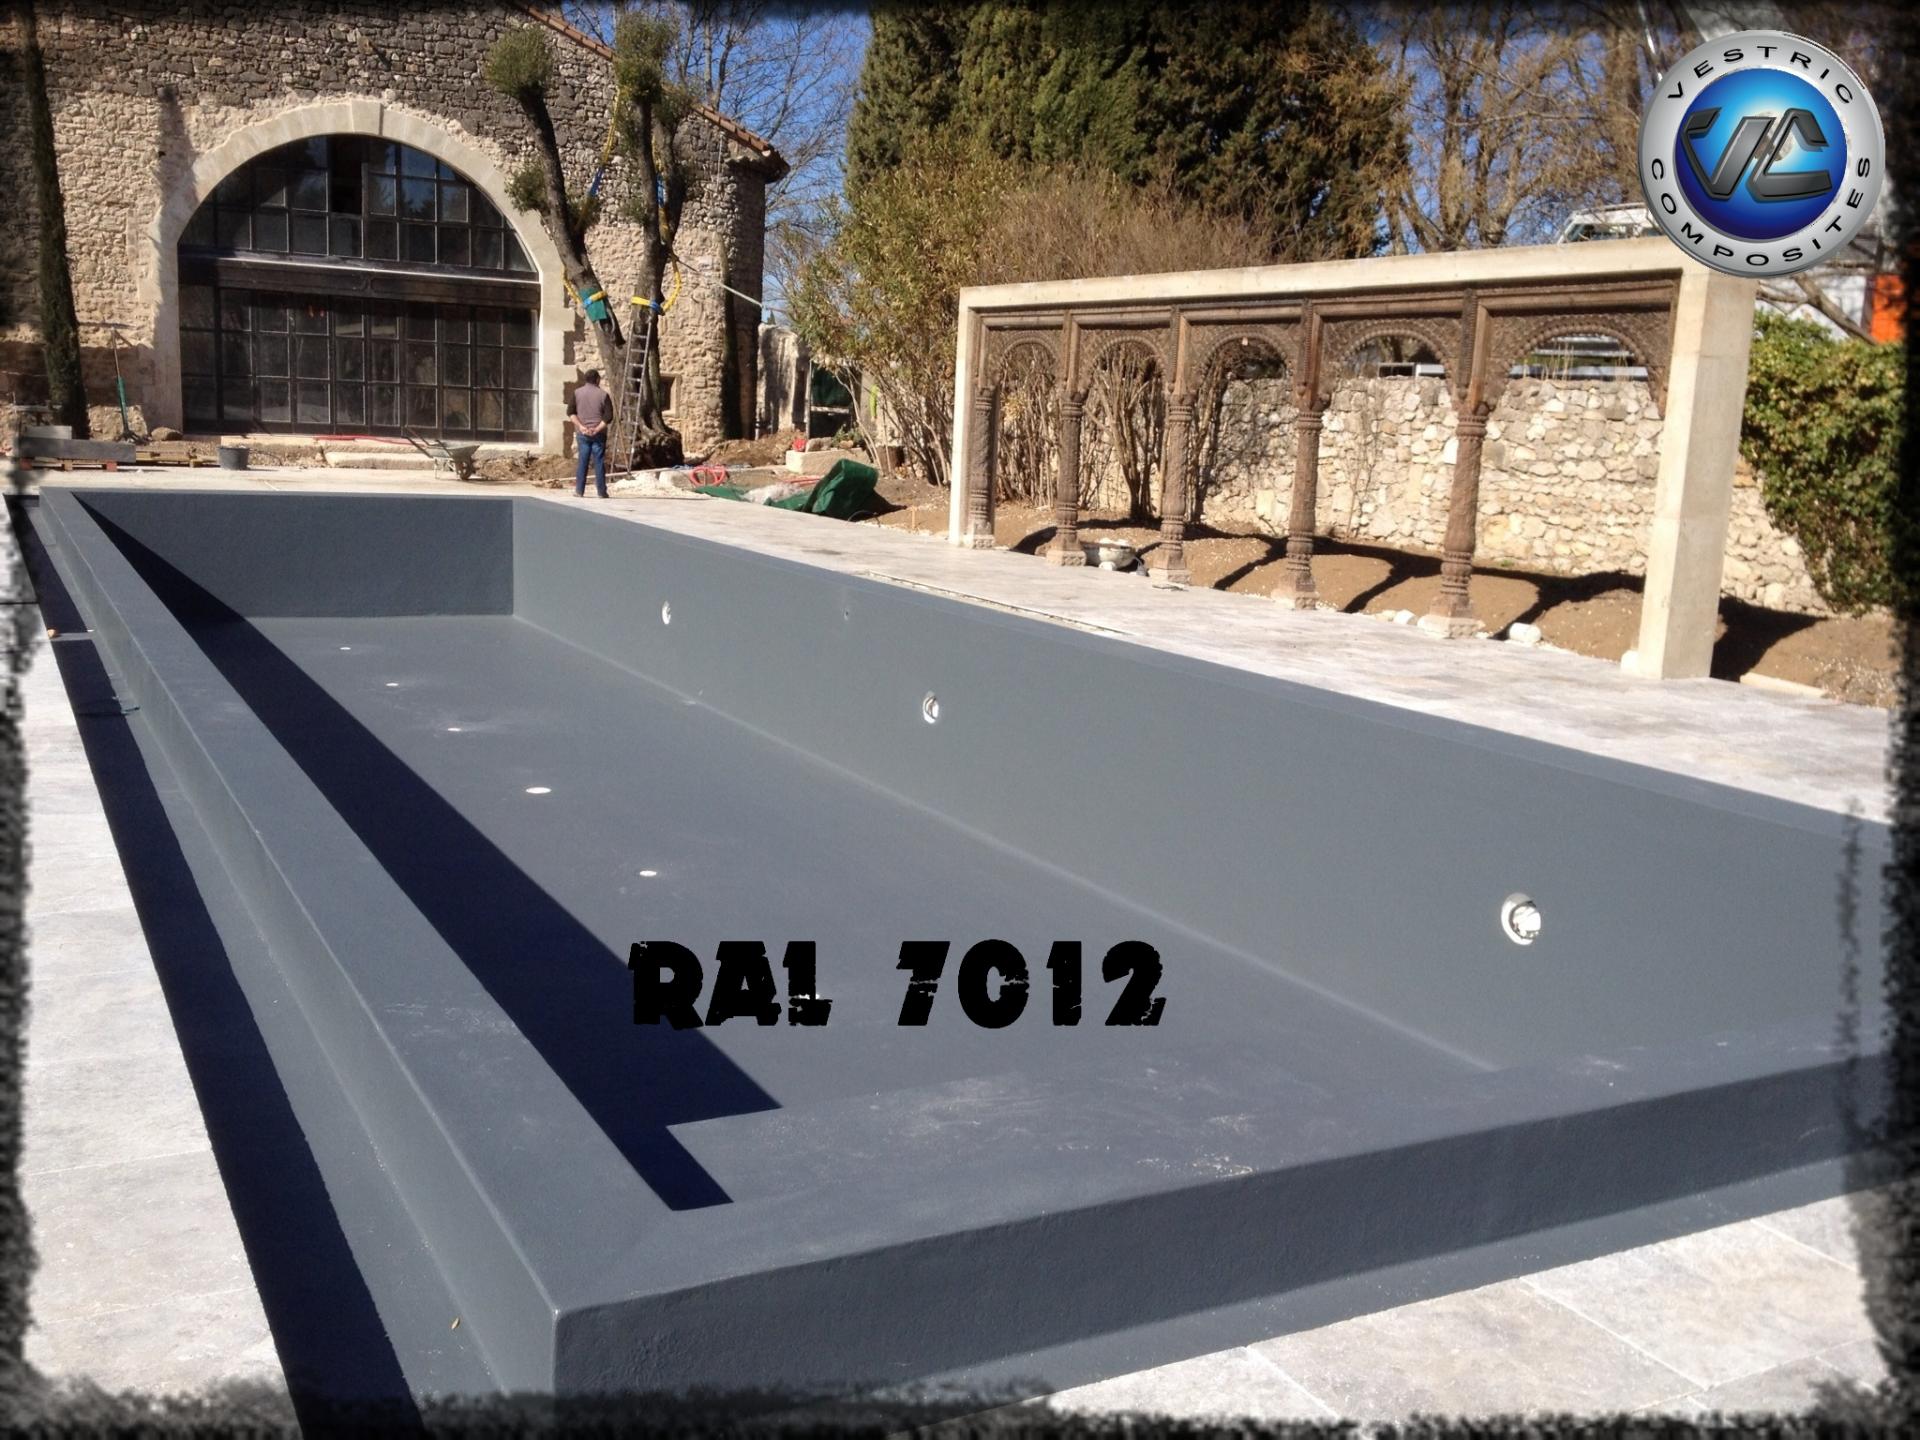 Ral 7012 couleur gris balzate anthracite piscine en eau vestric composites 4